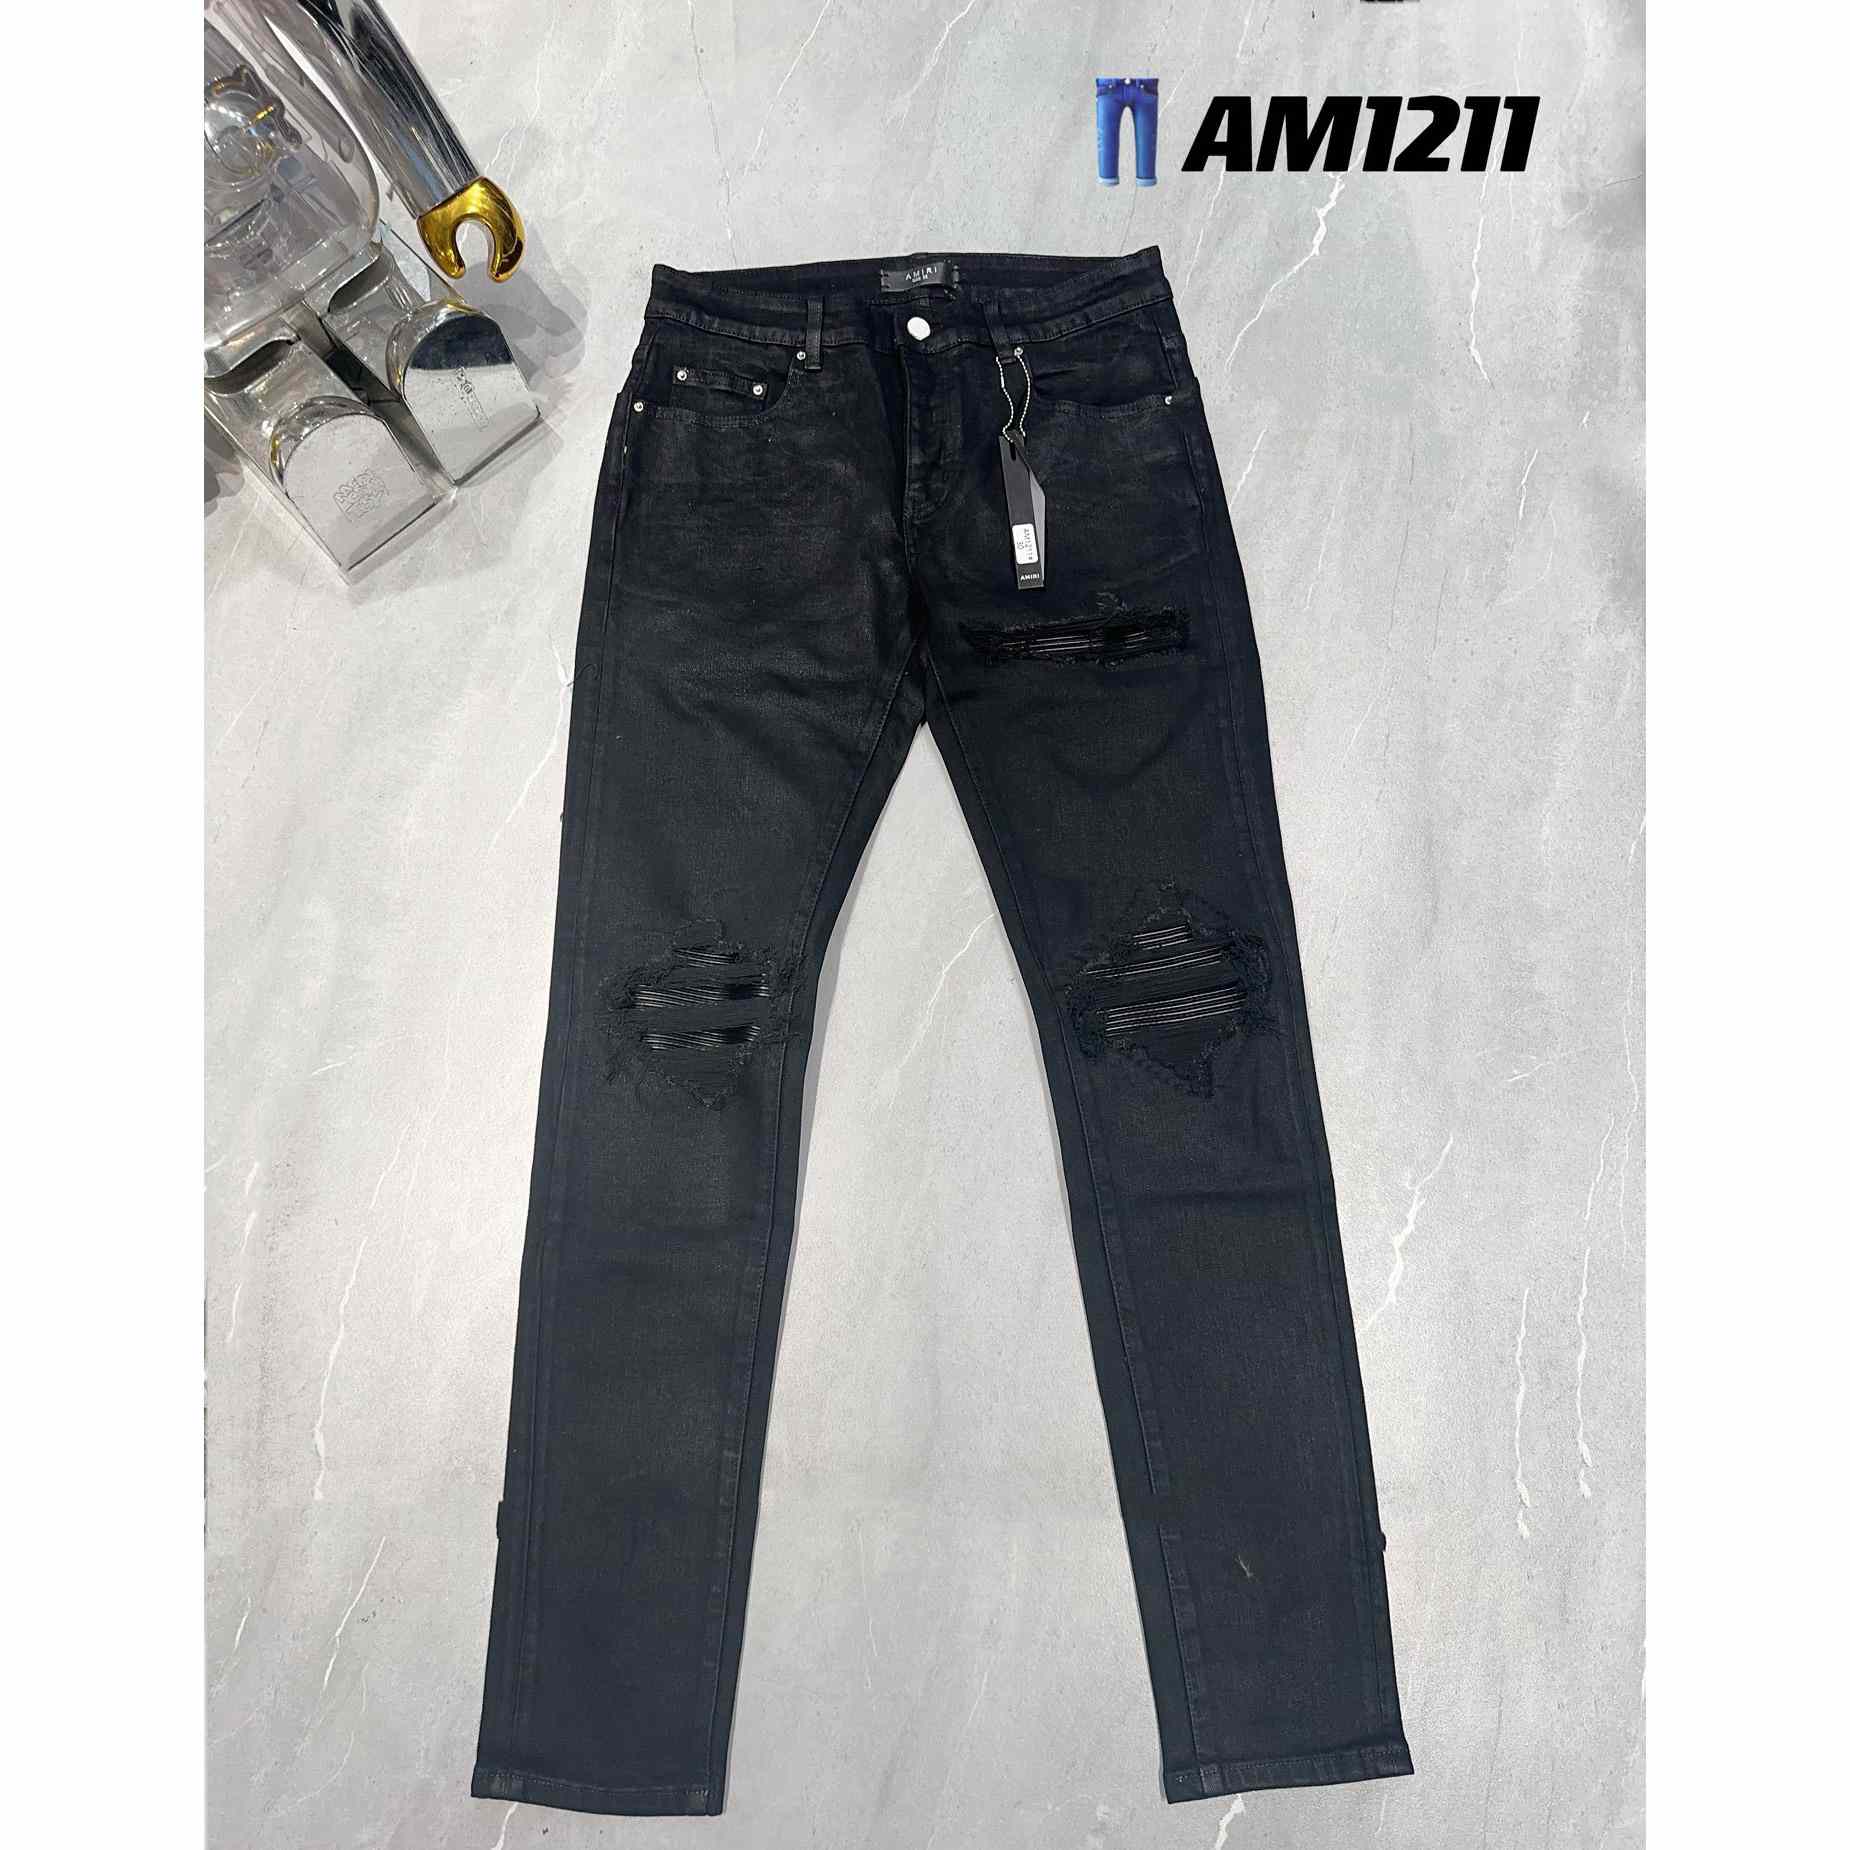 Amiri Jeans     AM1211 - DesignerGu